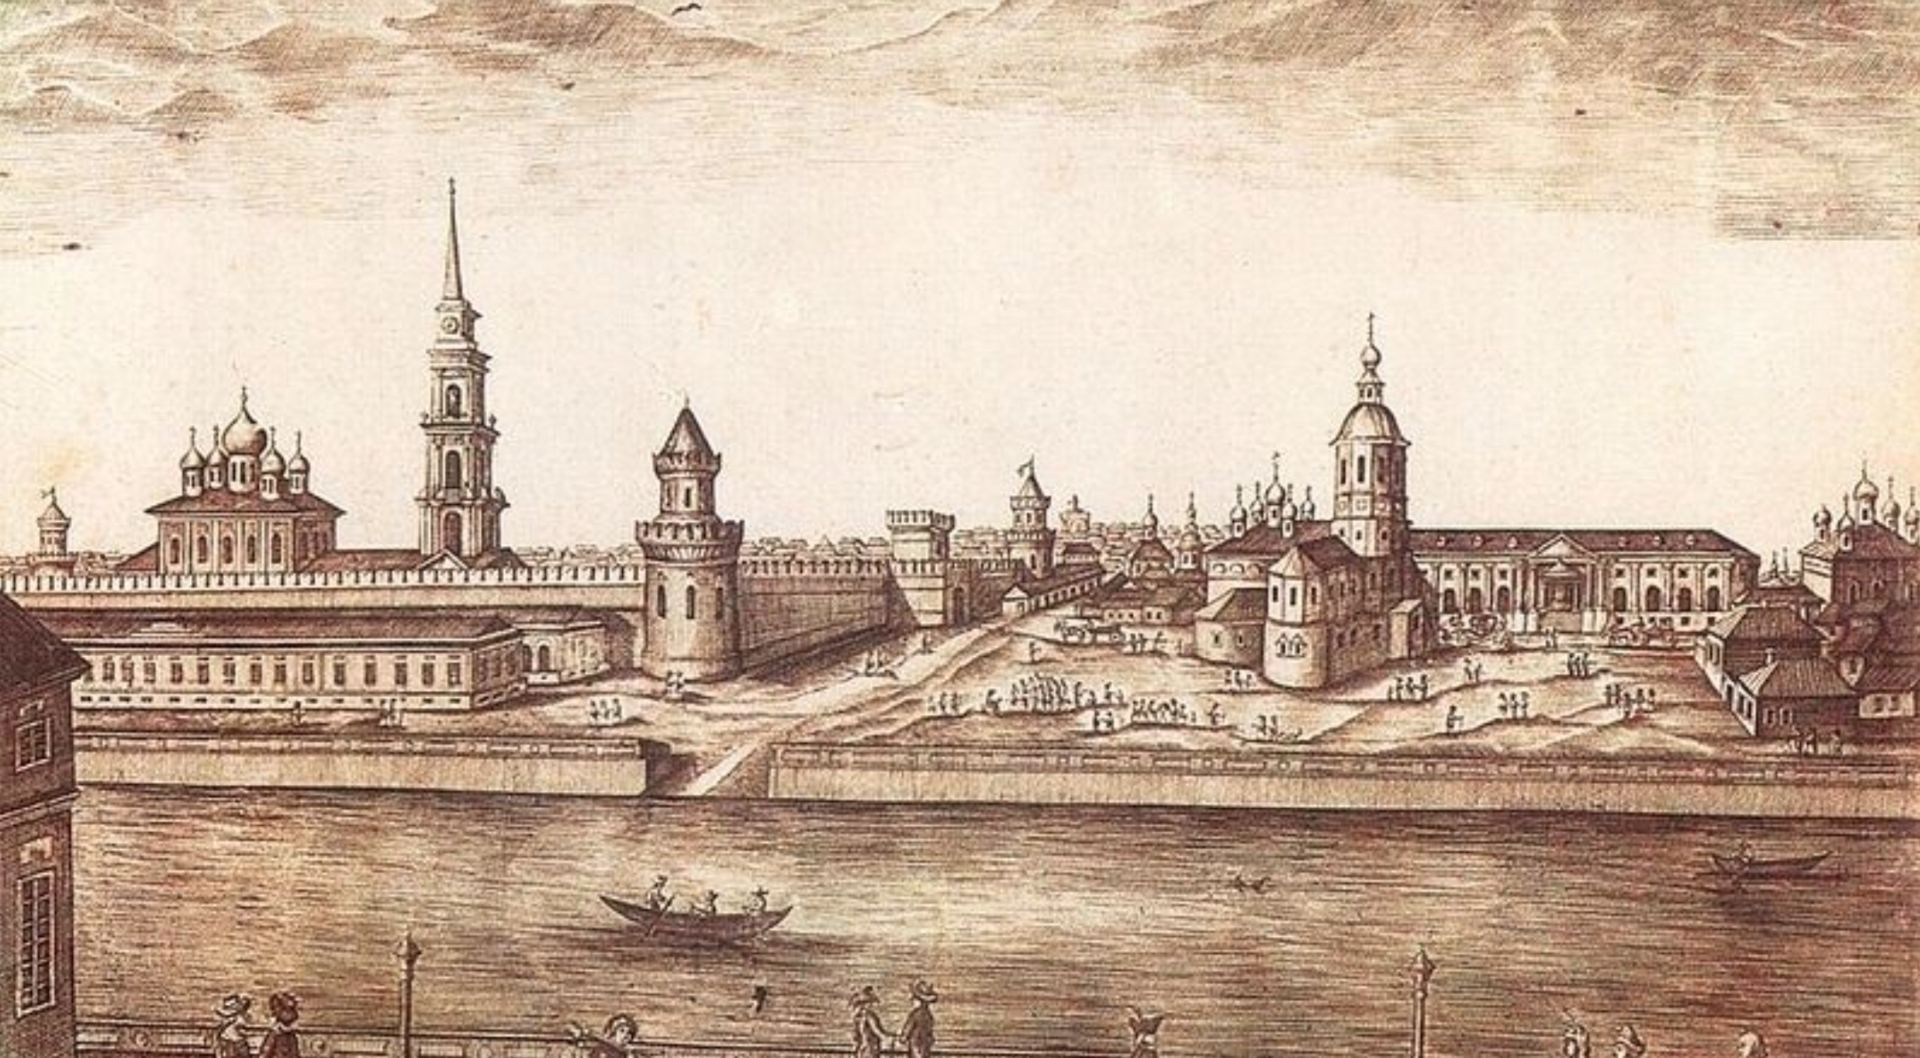 Тула в 18 веке. Тула Кремль 16 век. Гравюра 17 века Казанский Кремль. Старая Тула Кремль. Тула 12 век.